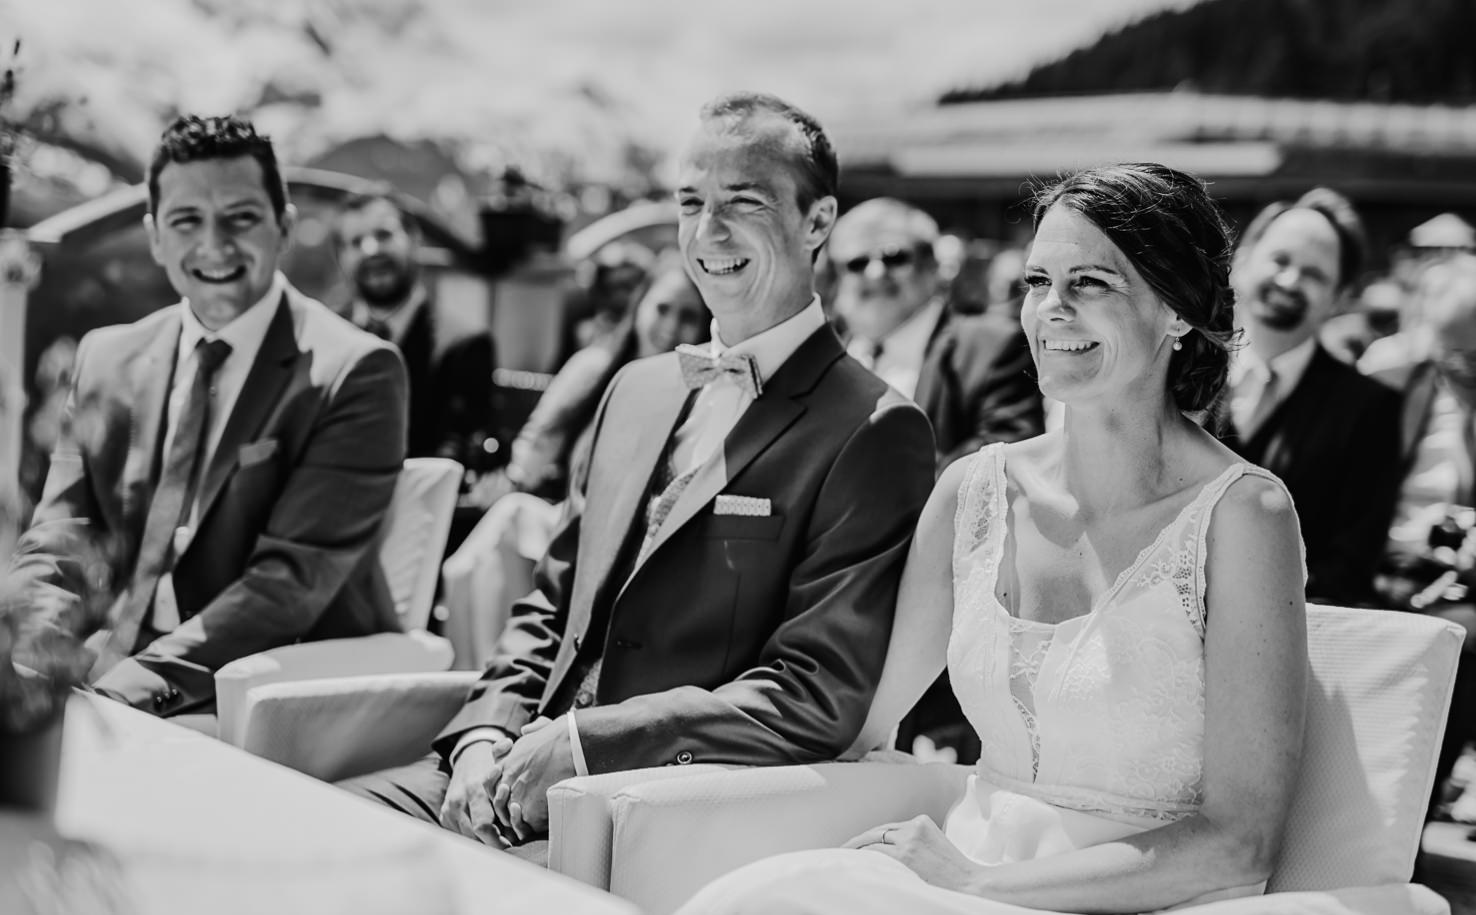 Heiraten am Berg - romantische Alpenhochzeit im Zillertal auf der Rösslalm und im Regionalmuseum, professionelle Hochzeitsfotos von Mica Zeitz von Jung und Wild design